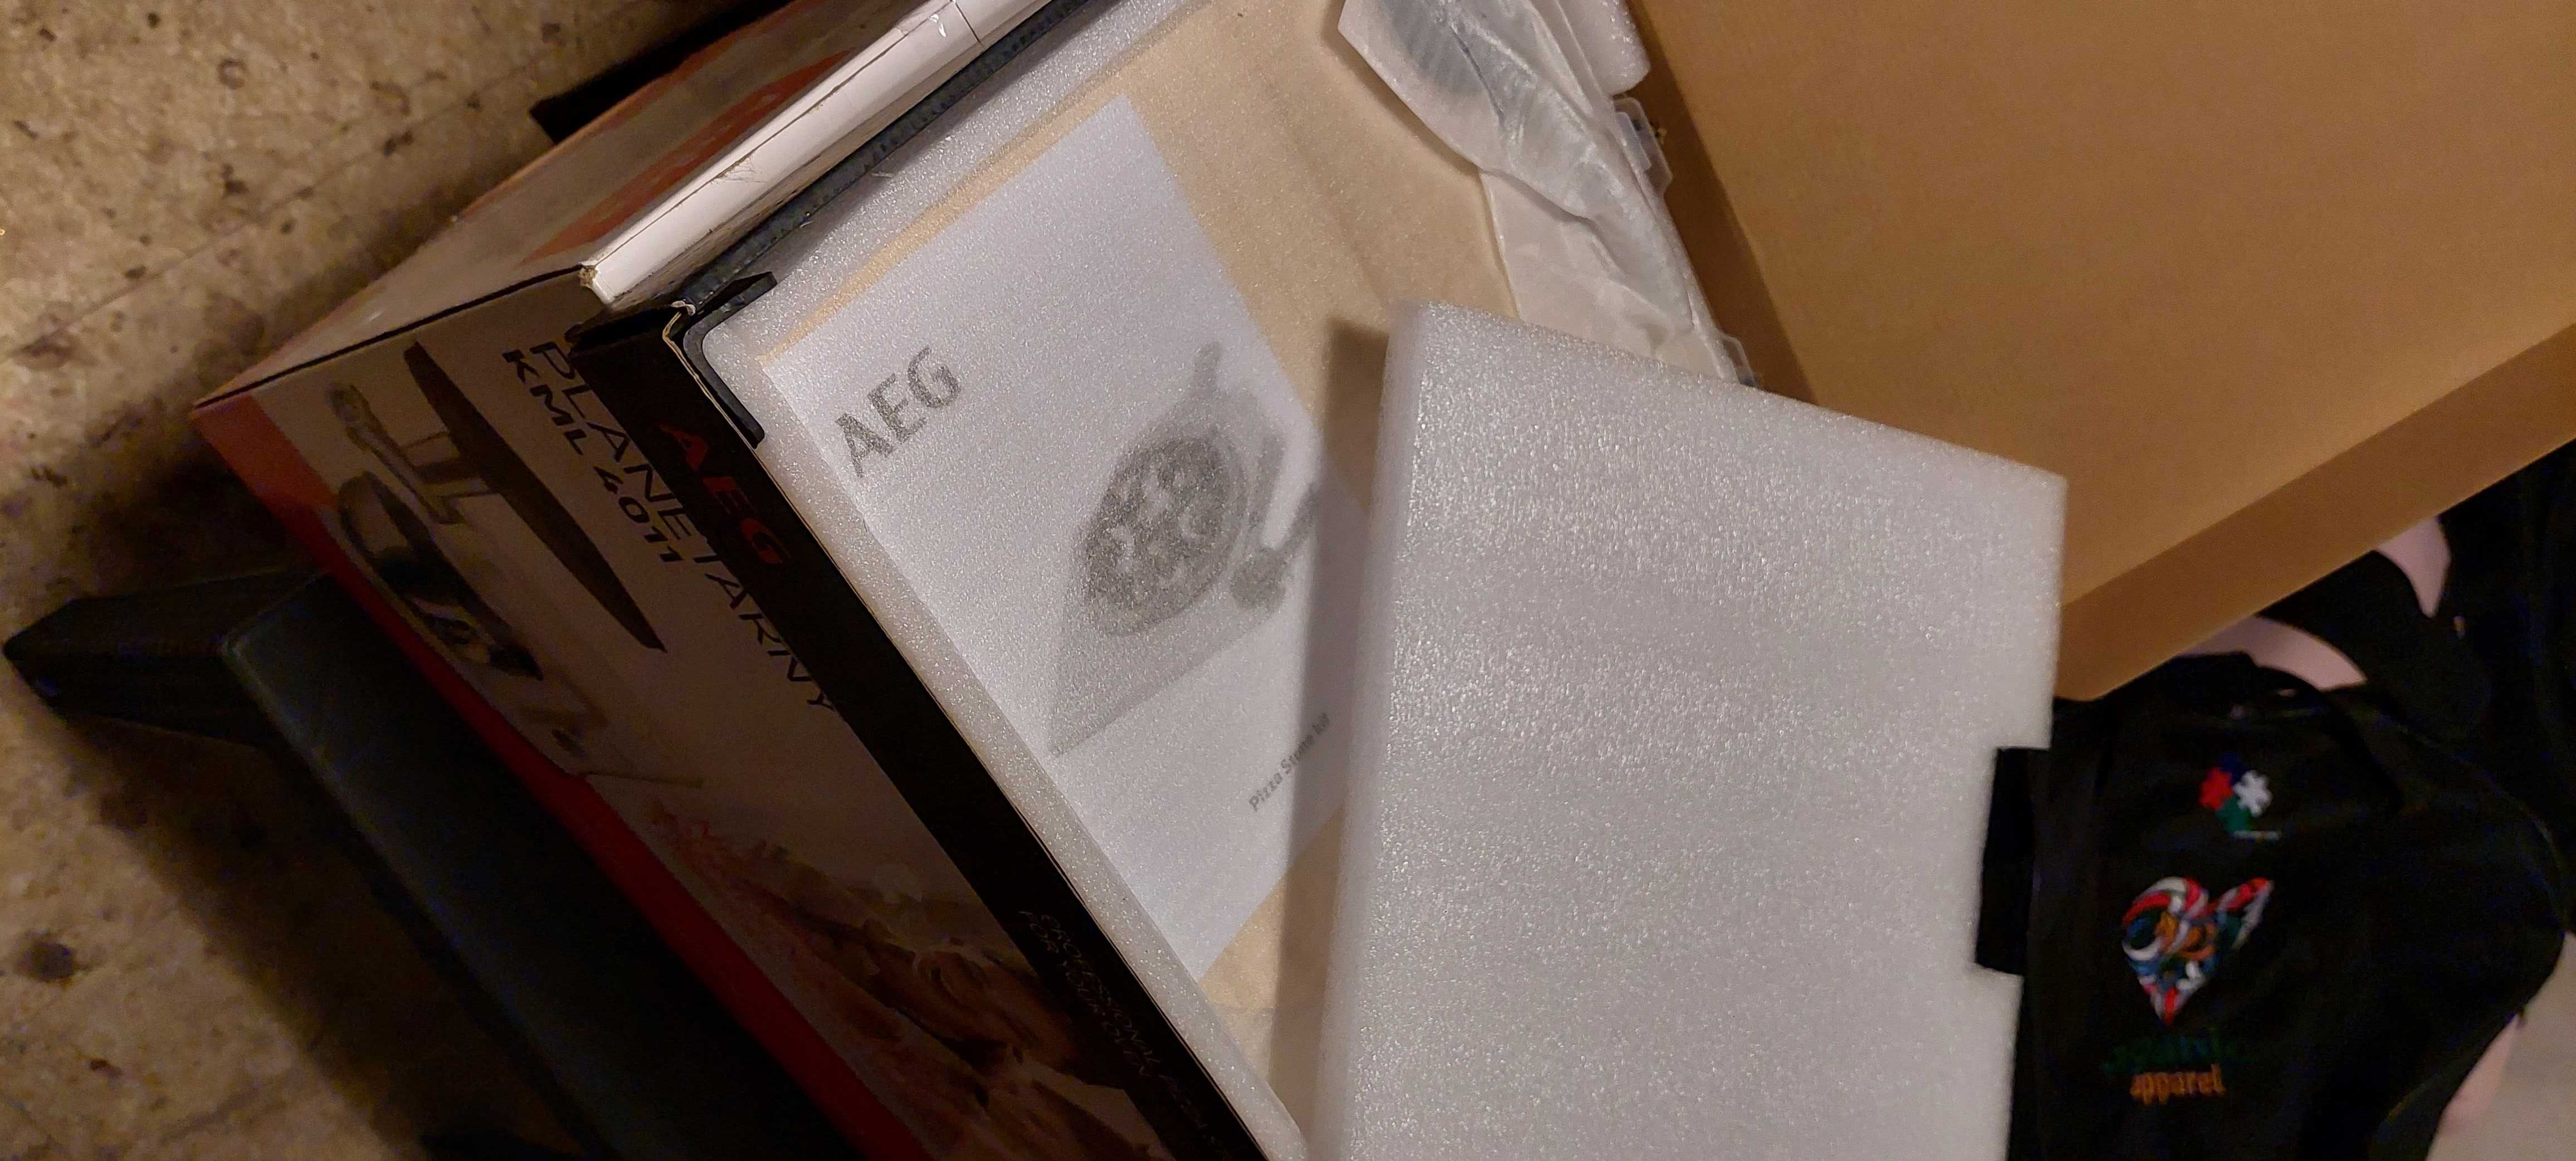 NOWY kamień do wypieku pizzy firmy AEG + łopatka i nóż  -  150 zł